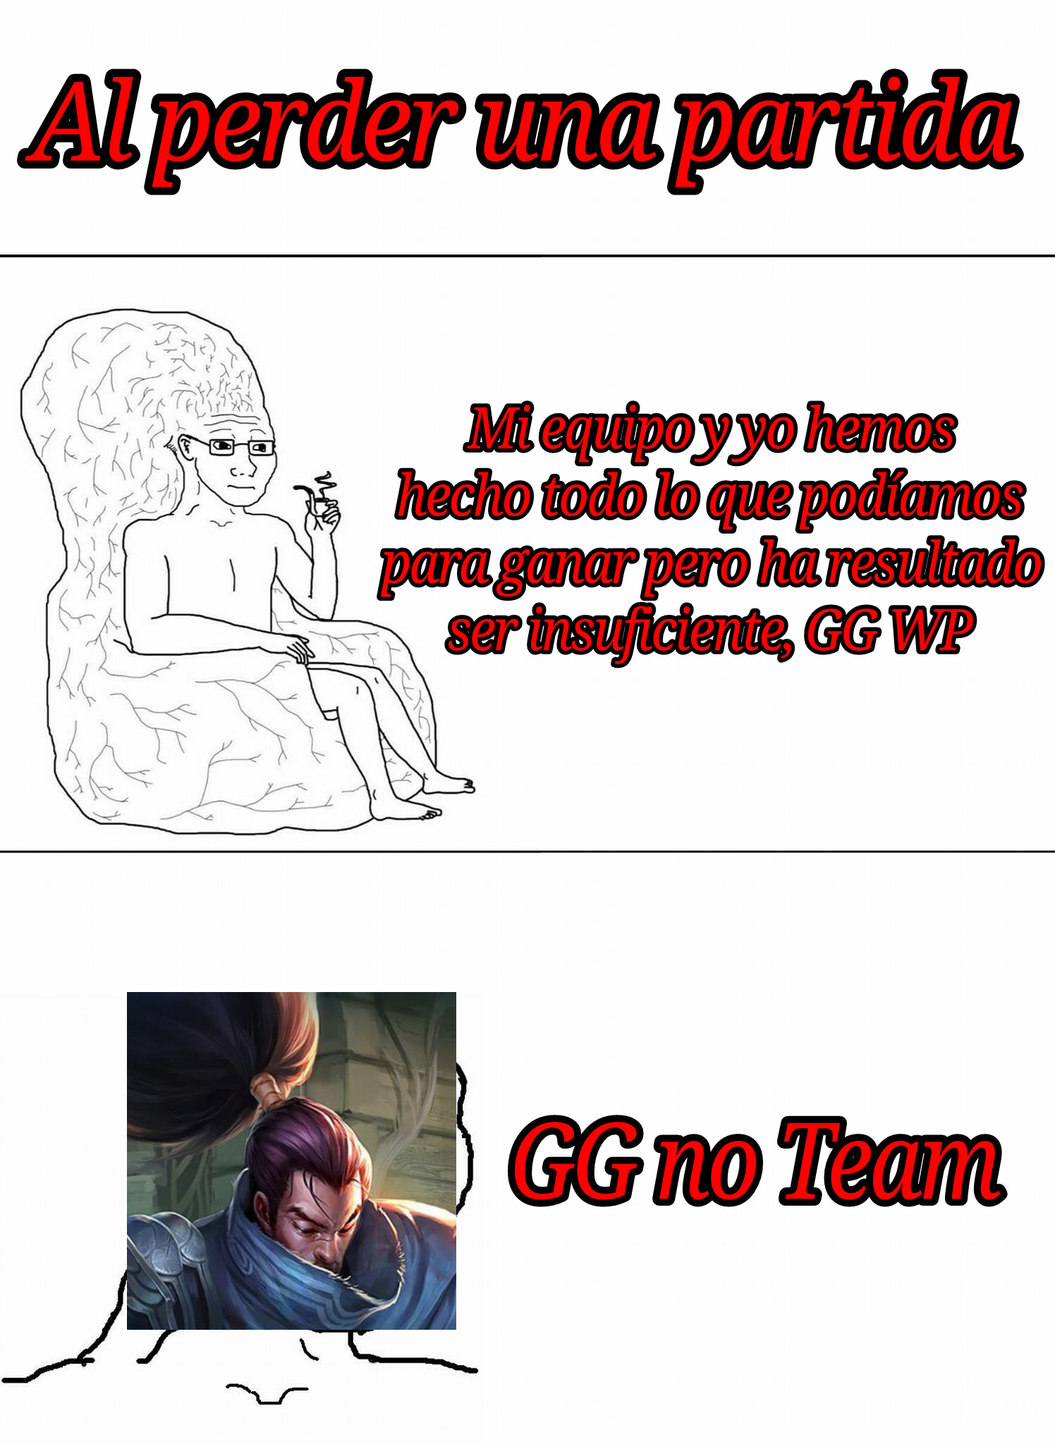 GG no tim - meme